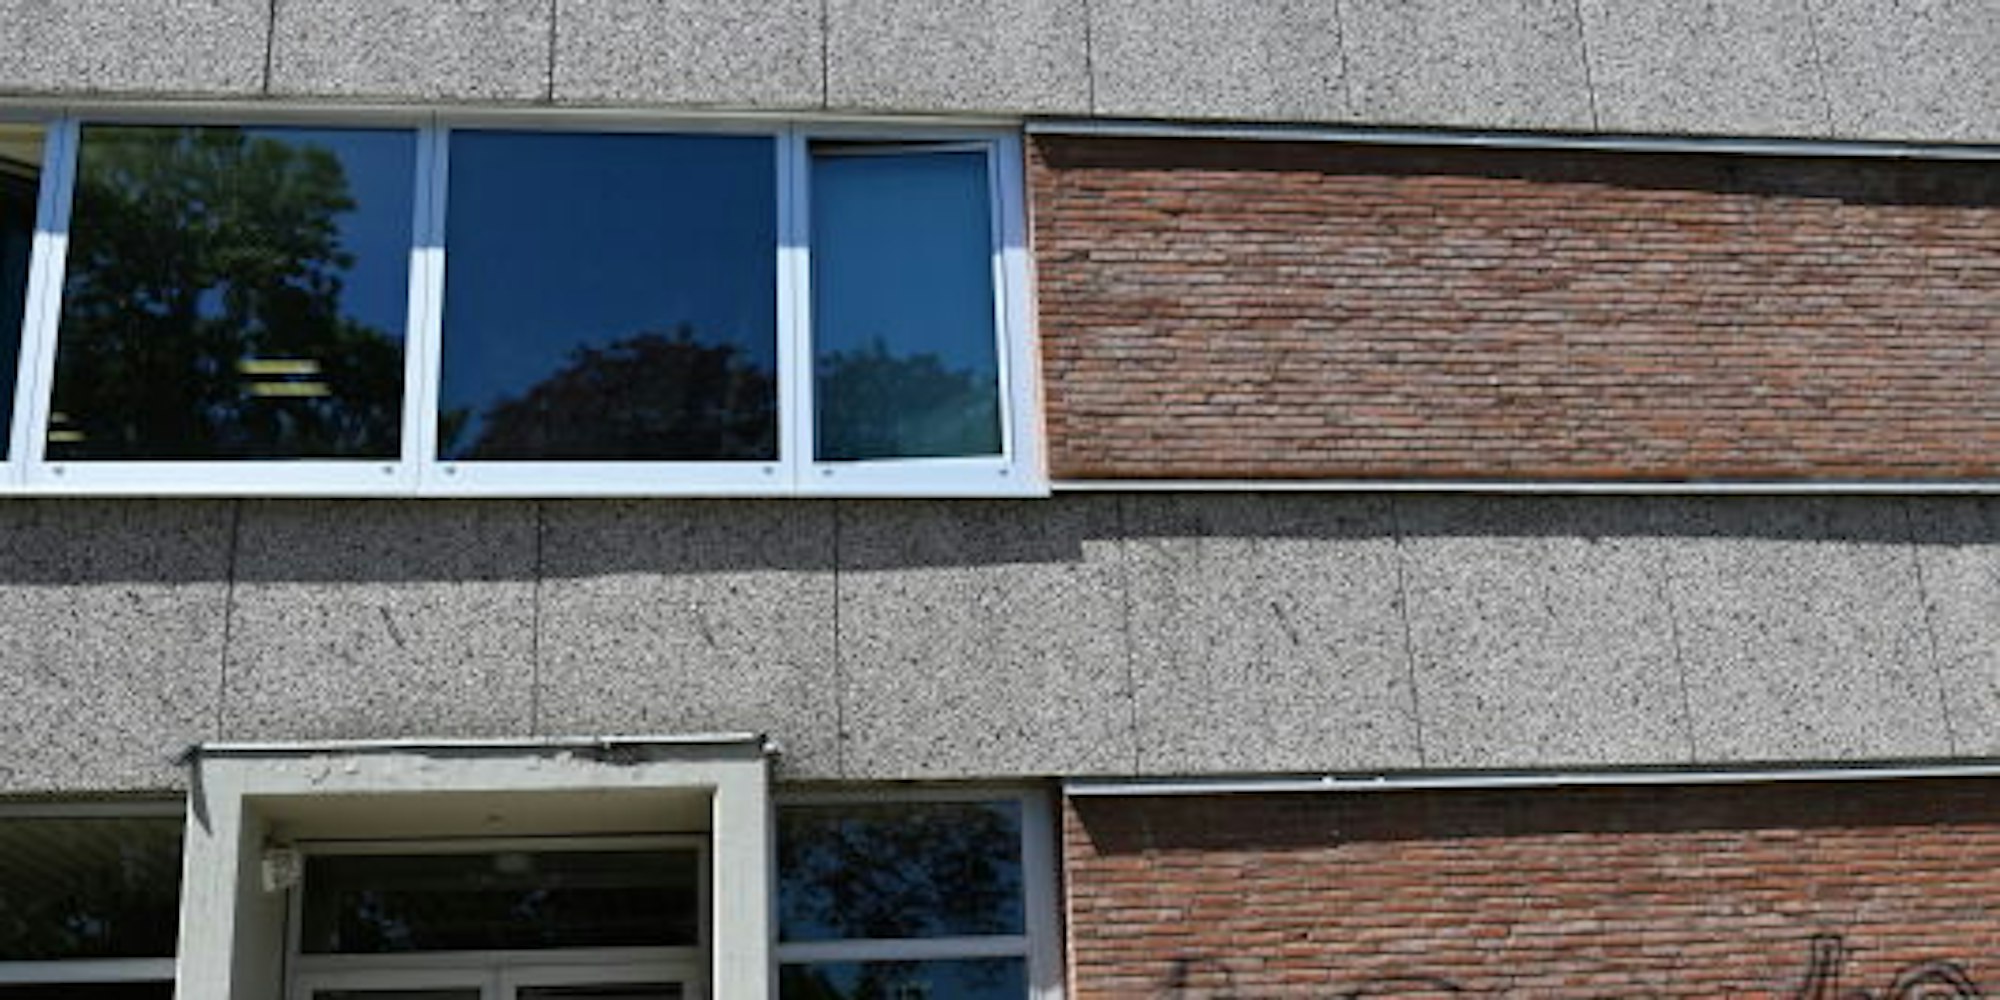 Die Fassadenbekleidung mit Waschbetonplatten ist eine gängige Bauweise. In Rösrath löste sich eine Platte von der Wand des Gymnasiums.